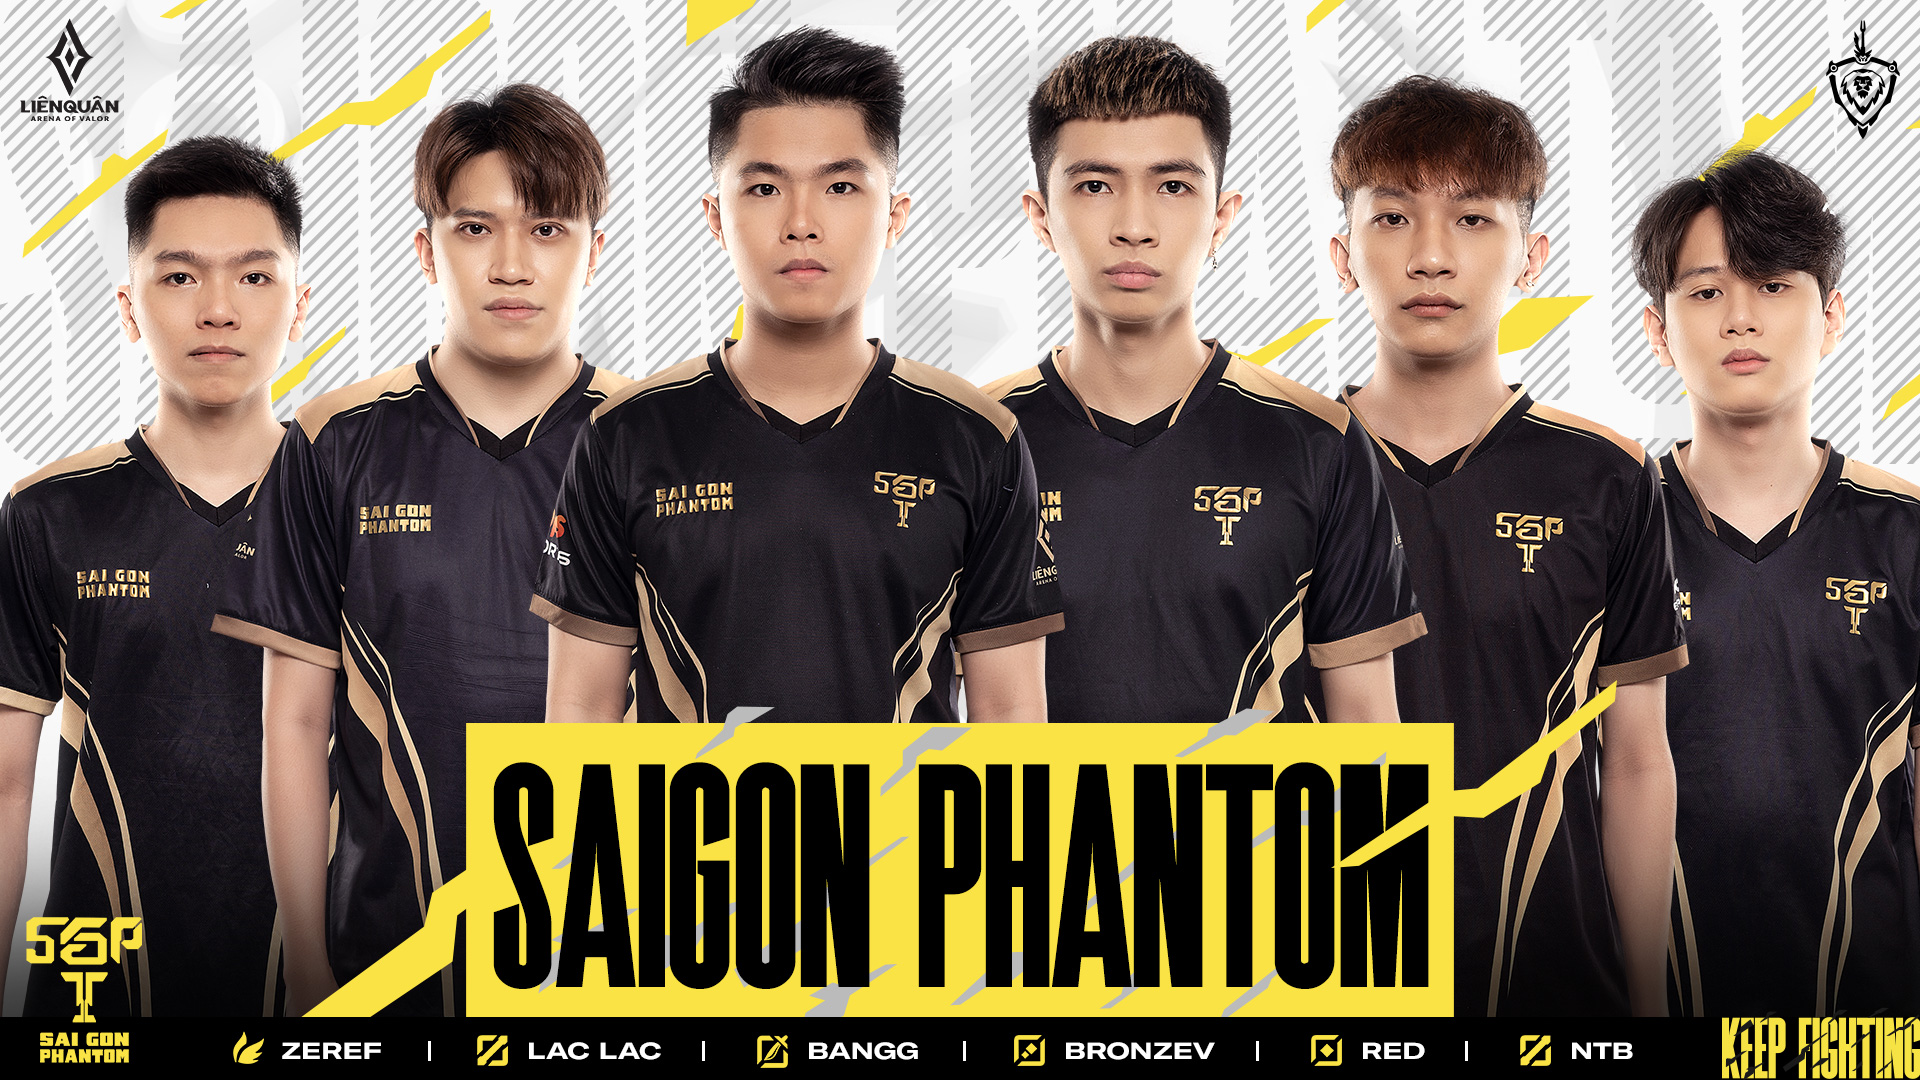 Đội hình của Saigon phantom